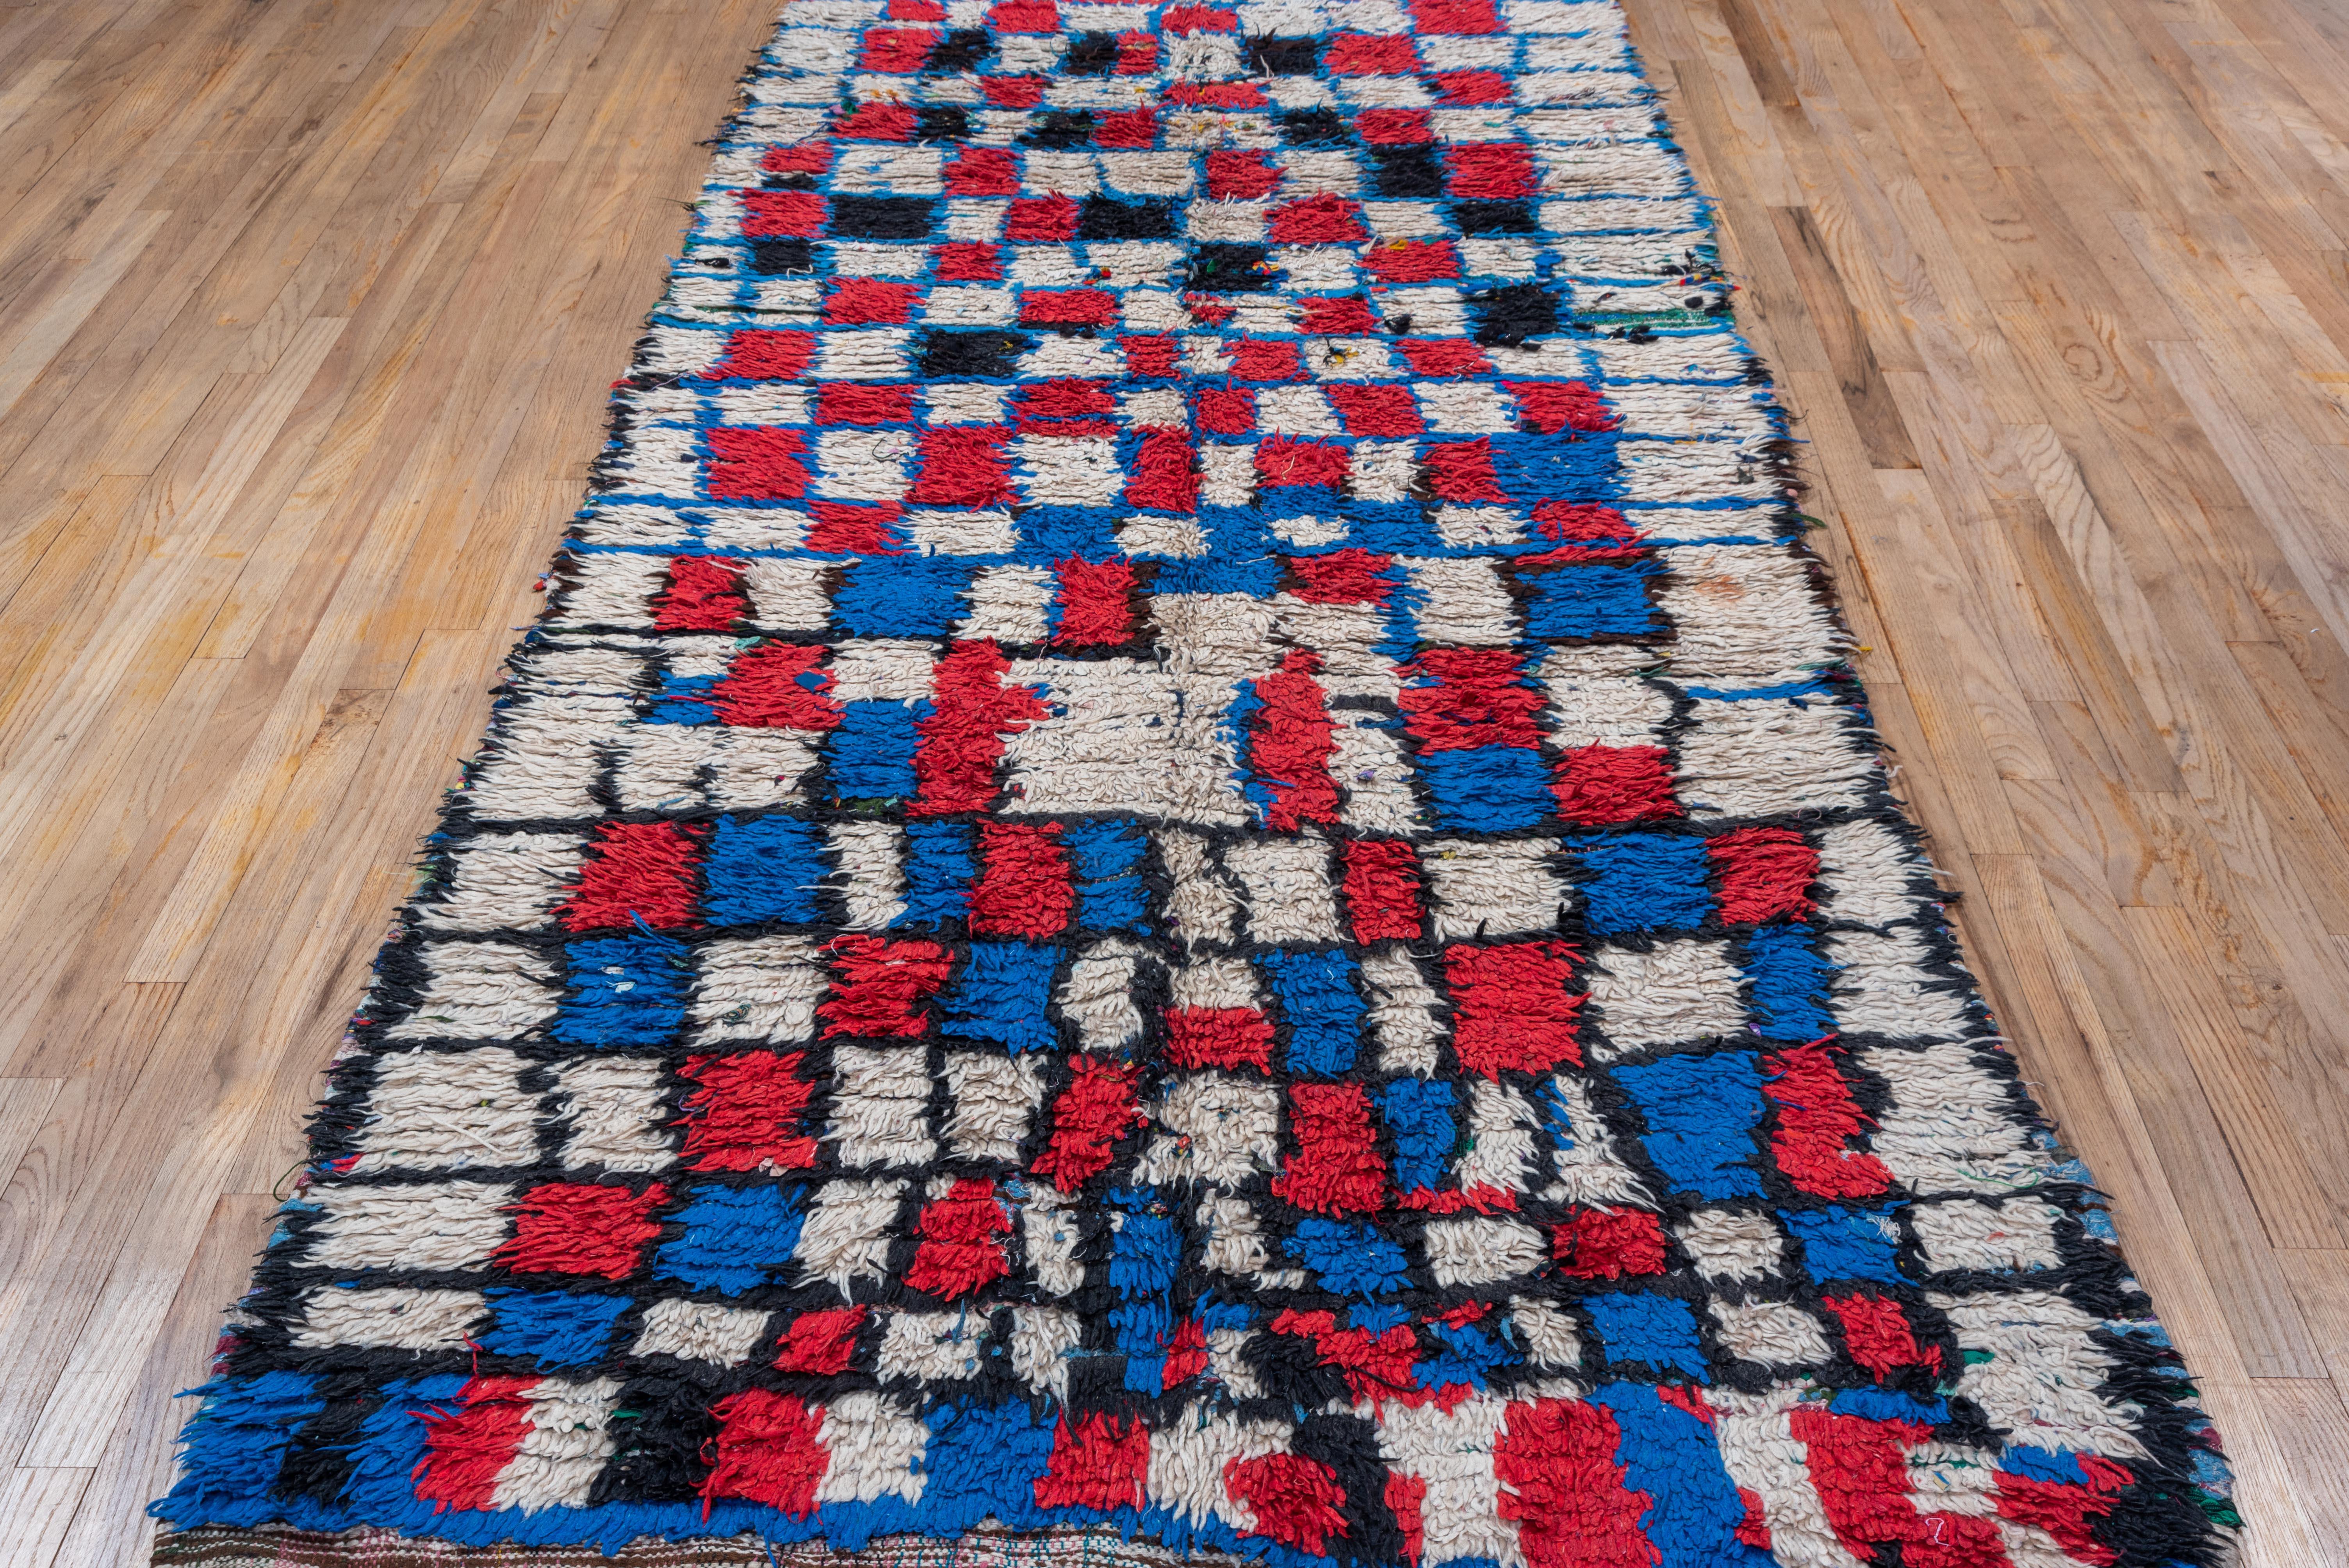 Dieser handgeknüpfte Dorfteppich weist ein durchgehendes Kastenmuster auf, das mit blauen Fäden zu cremefarbenen und roten Kästen geformt wurde. 